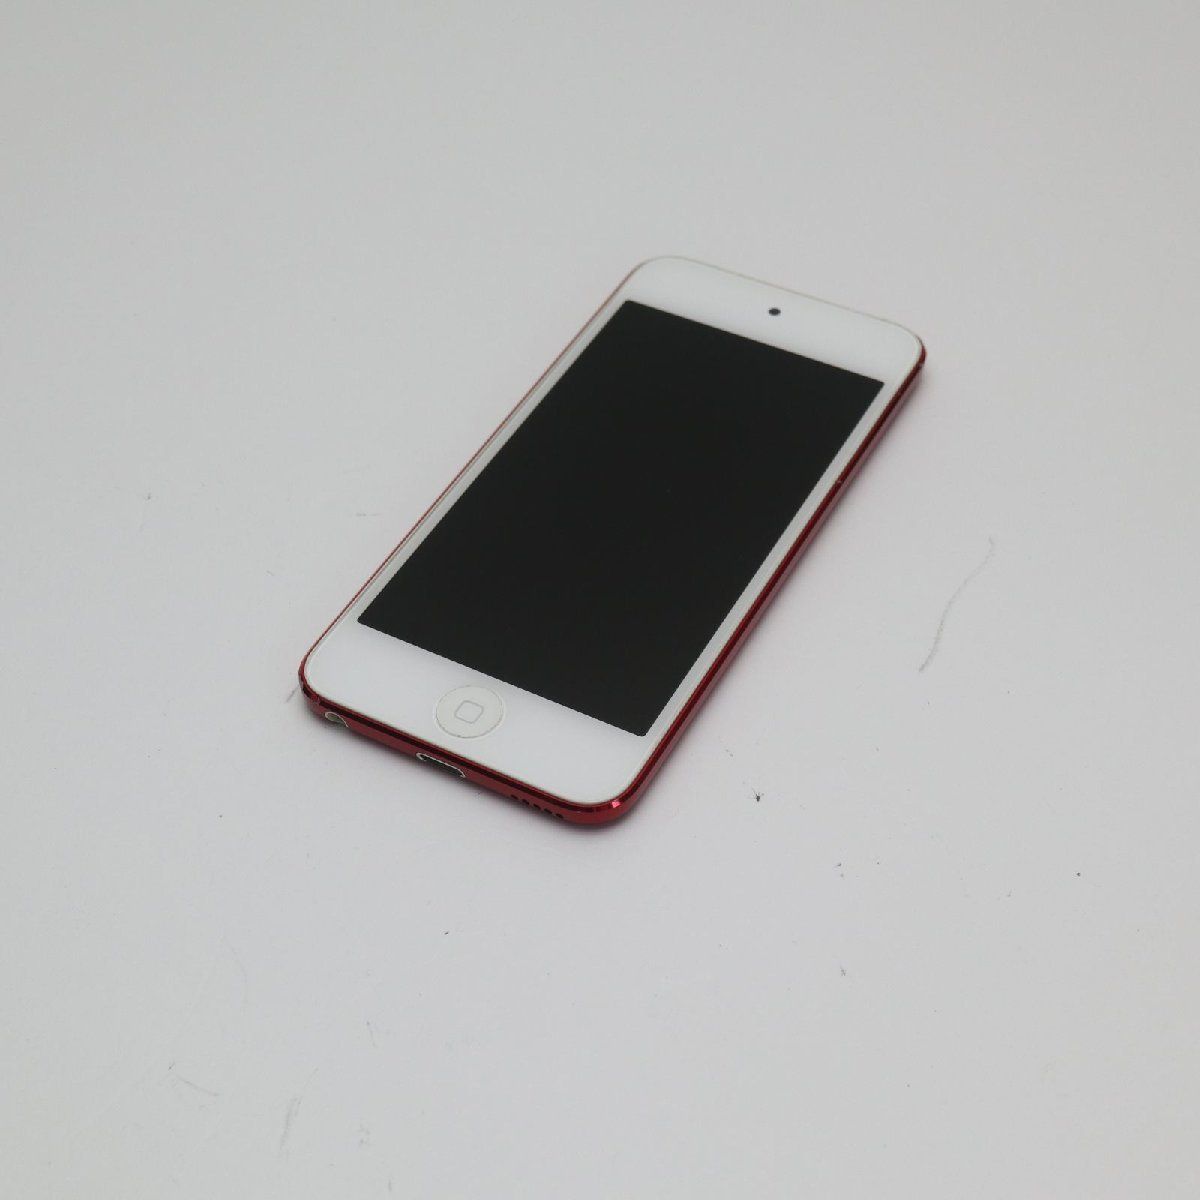 美品 iPod touch 第5世代 64GB レッド 即日発送 Apple 本体 土日祝発送